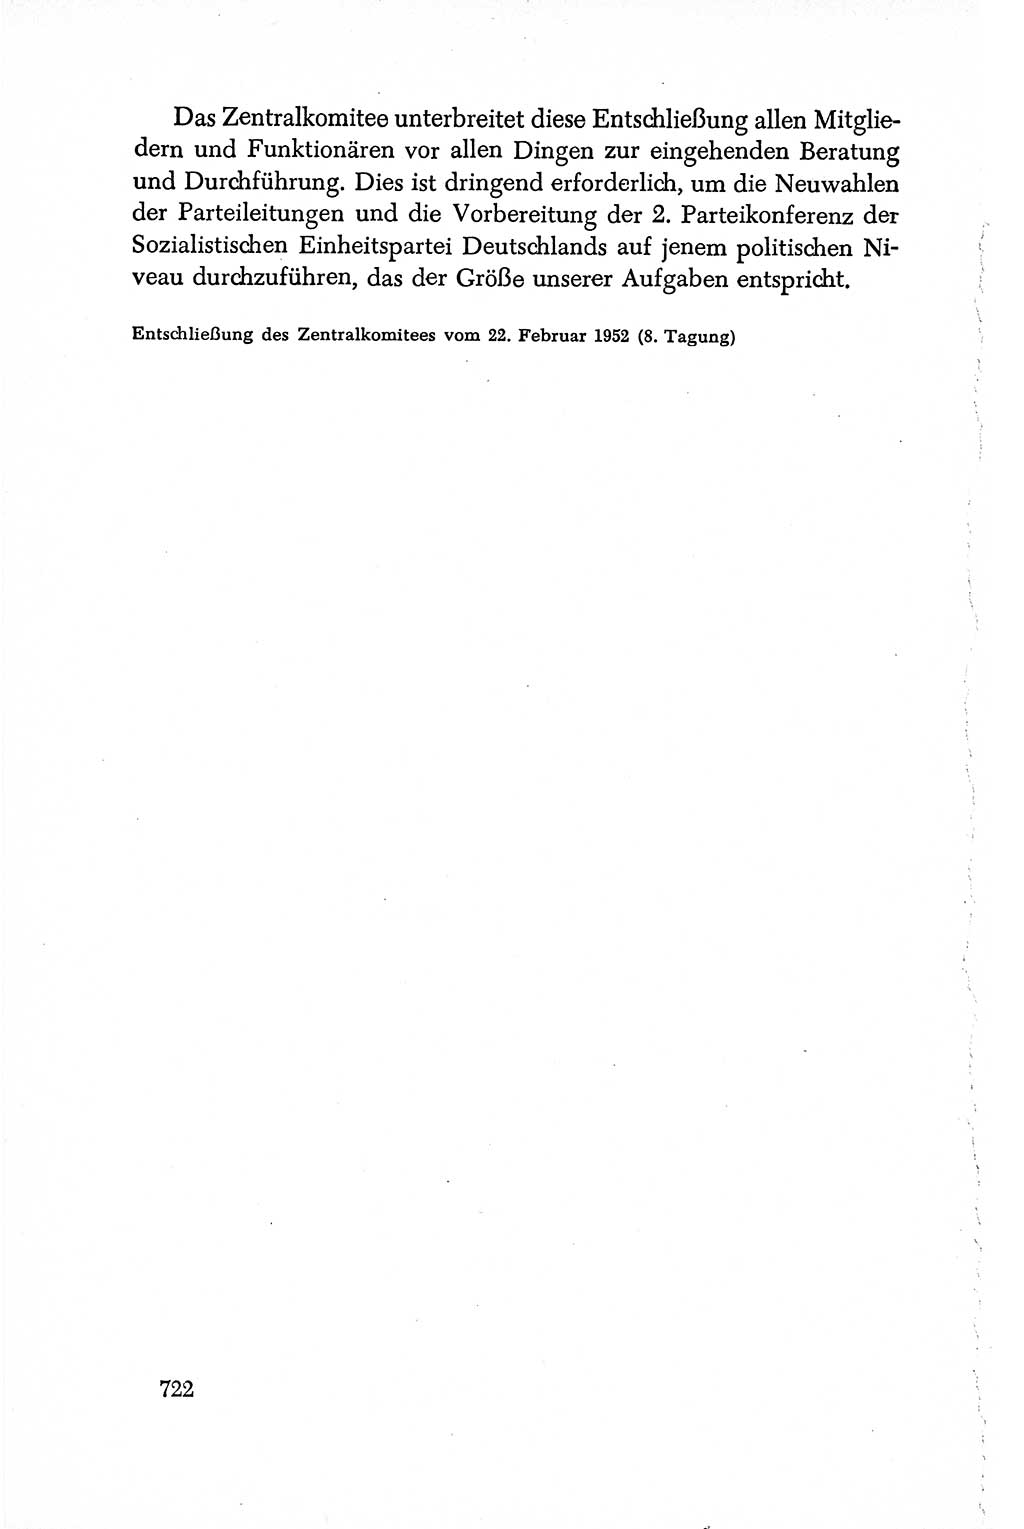 Dokumente der Sozialistischen Einheitspartei Deutschlands (SED) [Deutsche Demokratische Republik (DDR)] 1950-1952, Seite 722 (Dok. SED DDR 1950-1952, S. 722)